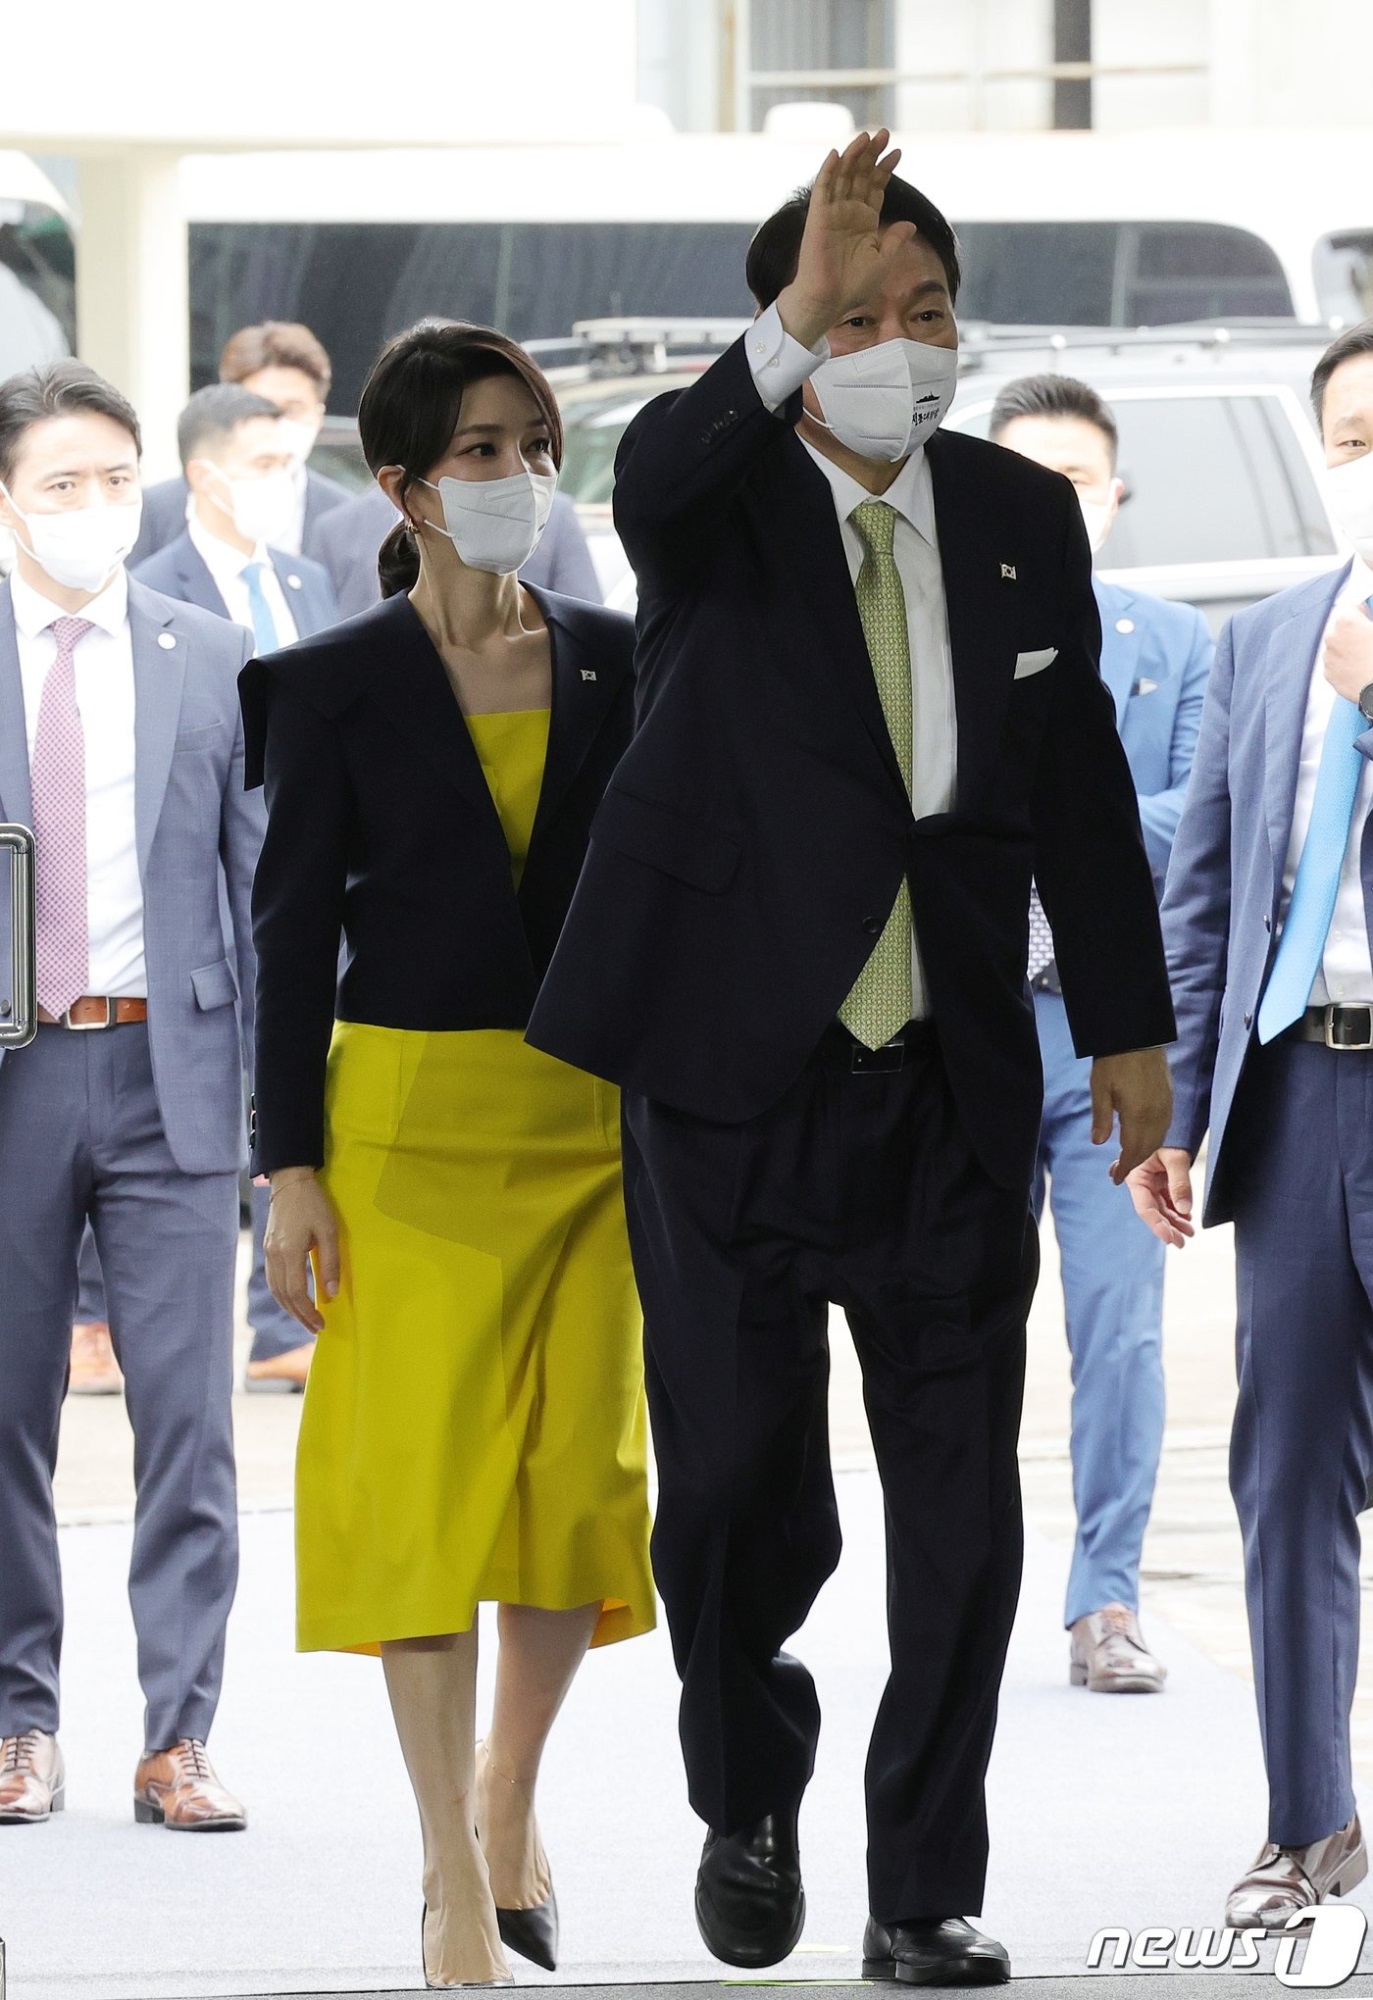 Phong cách thời trang “New Woman” của phu nhân tổng thống Hàn Quốc được gói gọn trong 3 chữ: Sang trọng, độc lập, tinh tế-5